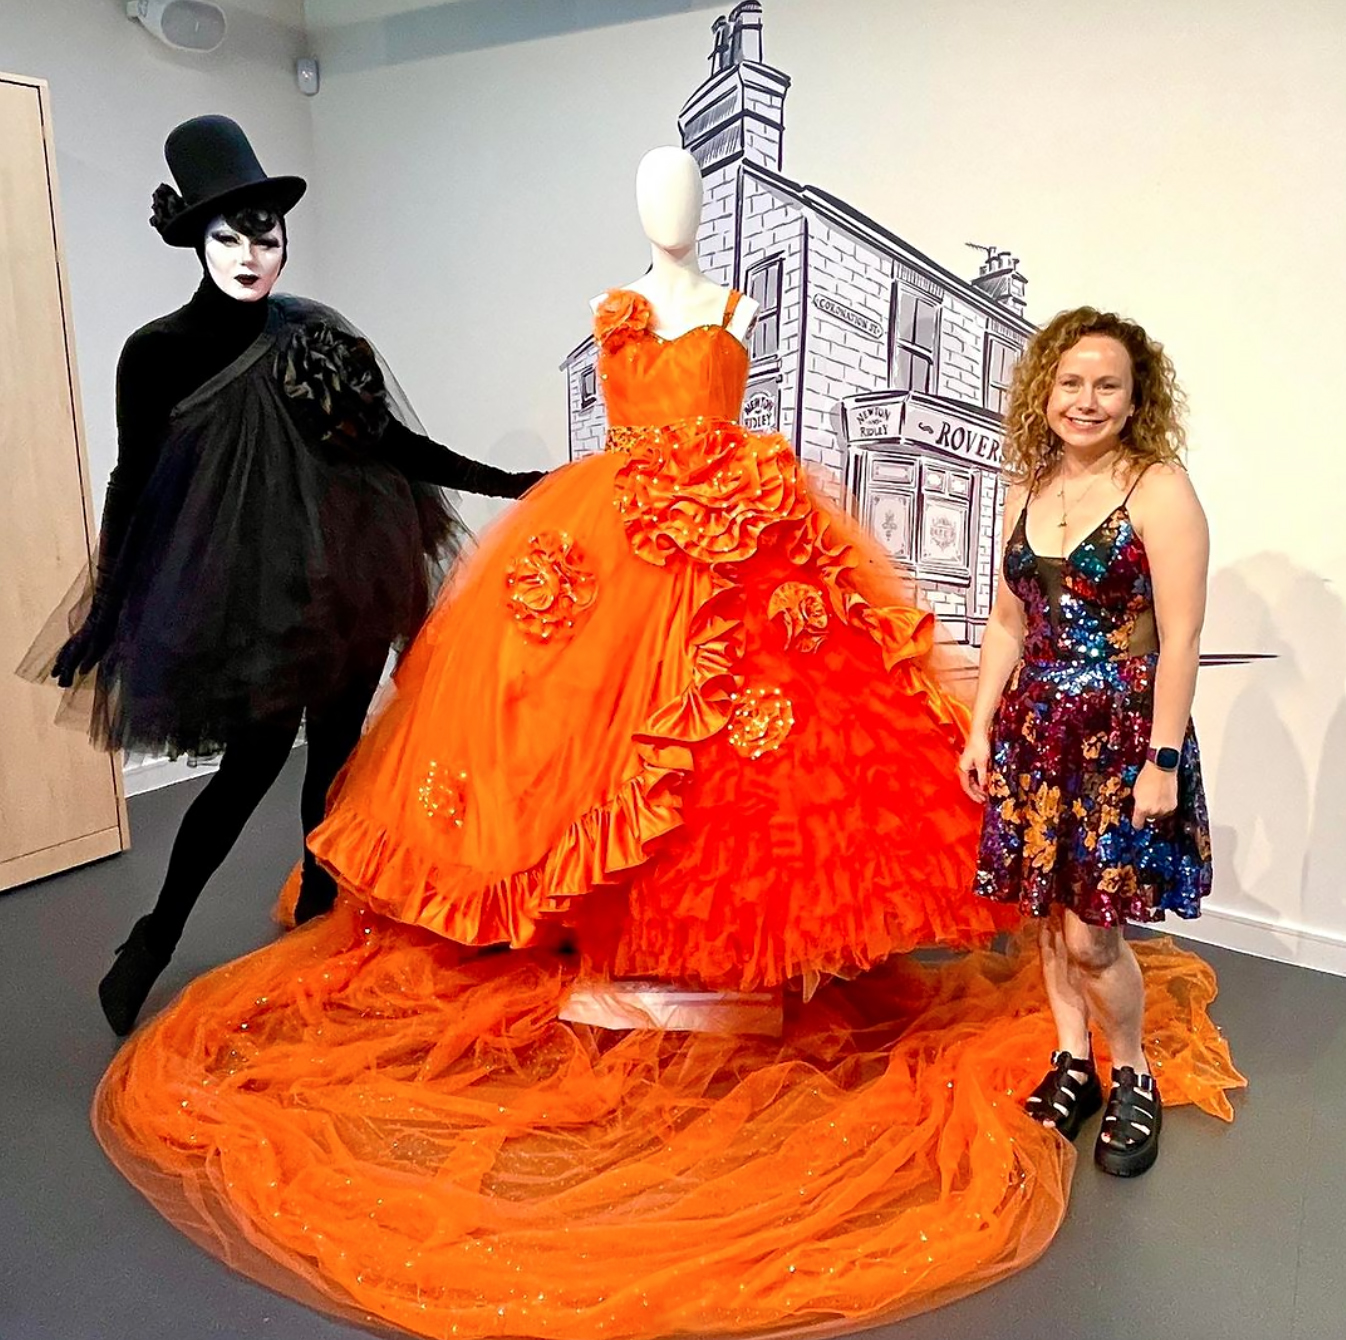 Liquorice Black showcasing her orange wedding dress design, work by Gemma Winter at her wedding